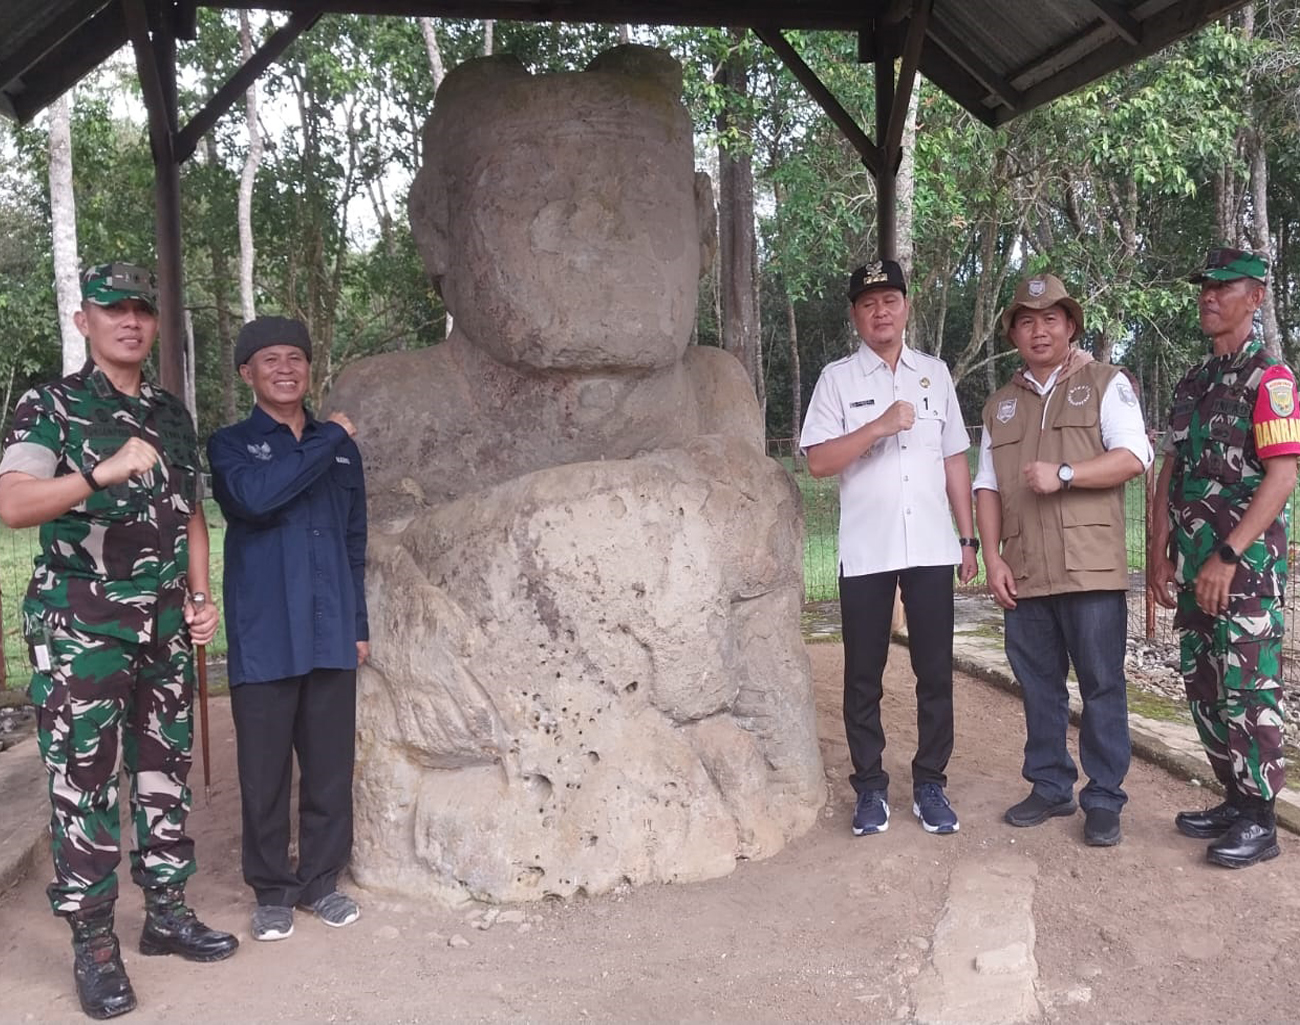 Lahat, Kabupaten Berjuluk Negeri Seribu Megalitik ini Selalu Menarik Minat Banyak Wisatawan Budaya